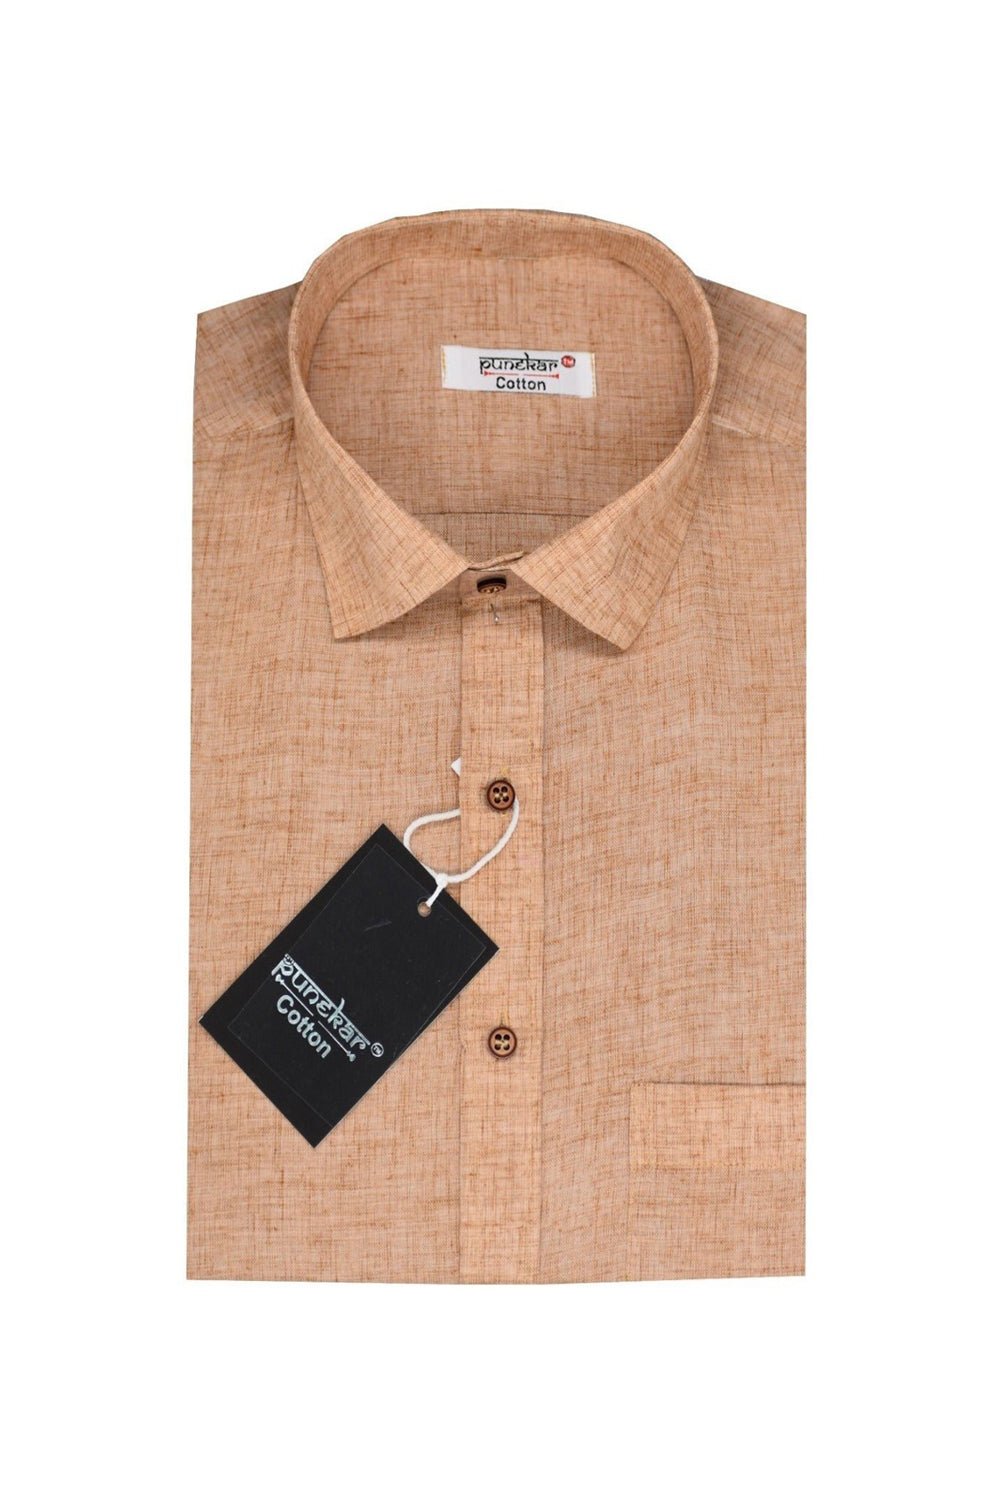 Punekar Cotton Men's Formal Handmade Peach Color Shirt for Men's. - Punekar Cotton